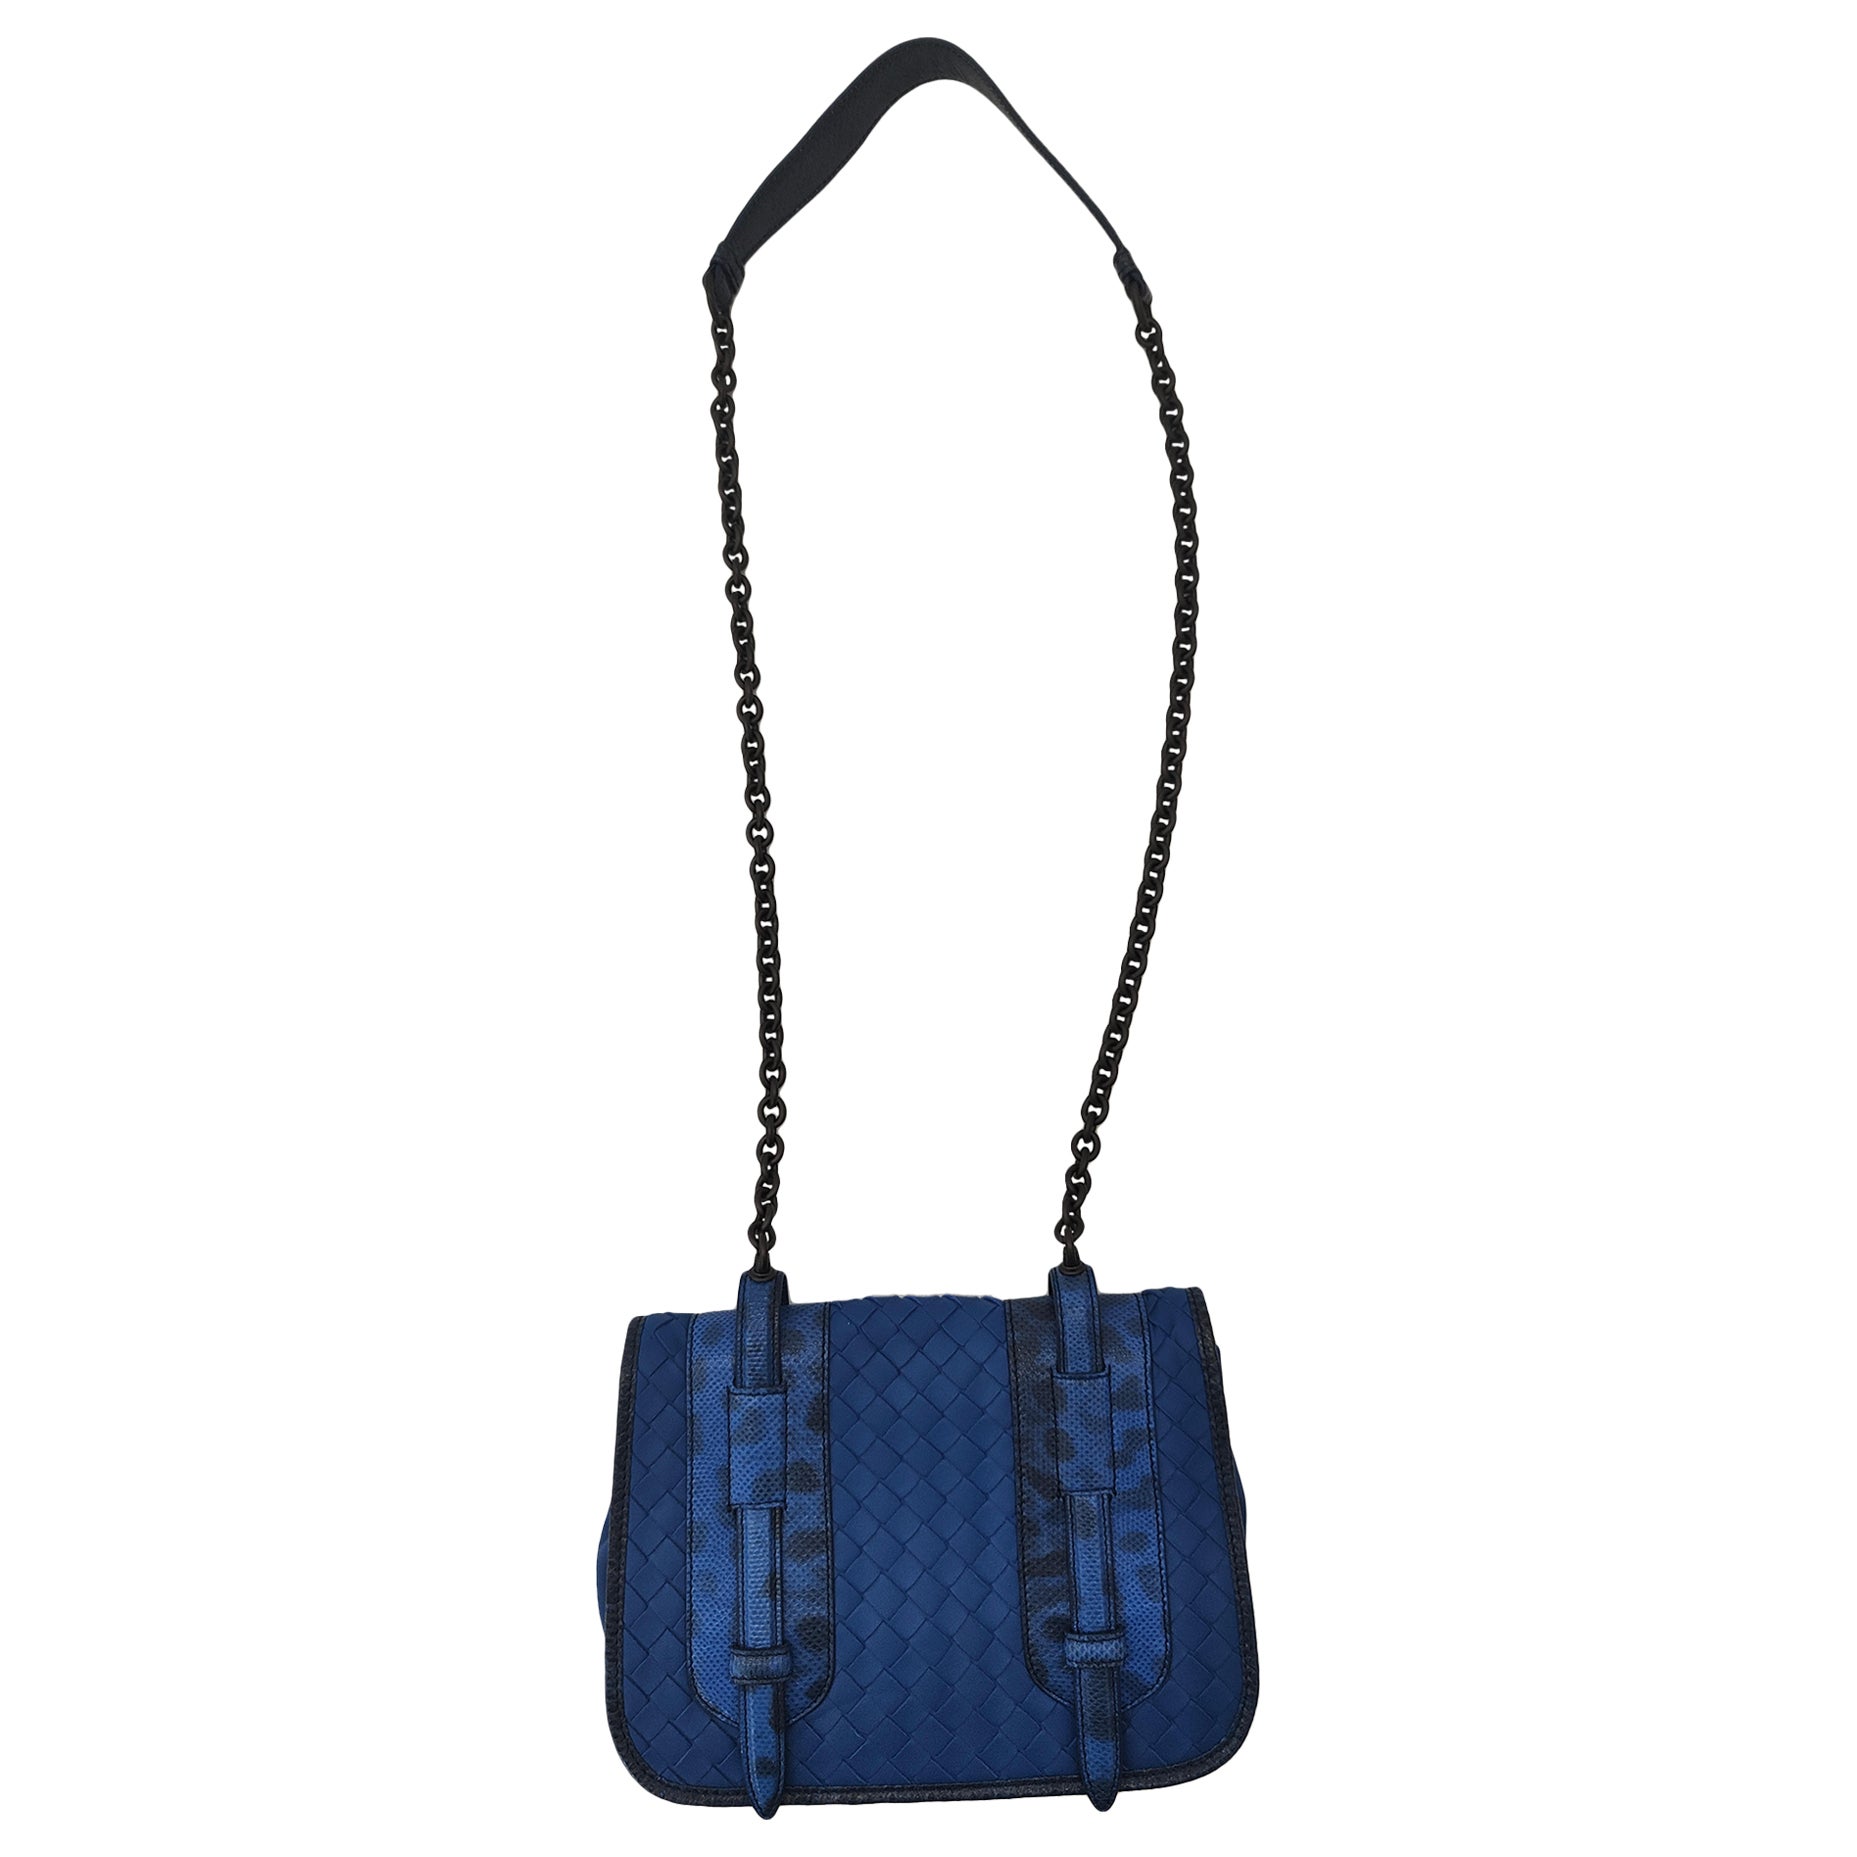 Bottega Veneta blue leather shoulder bag